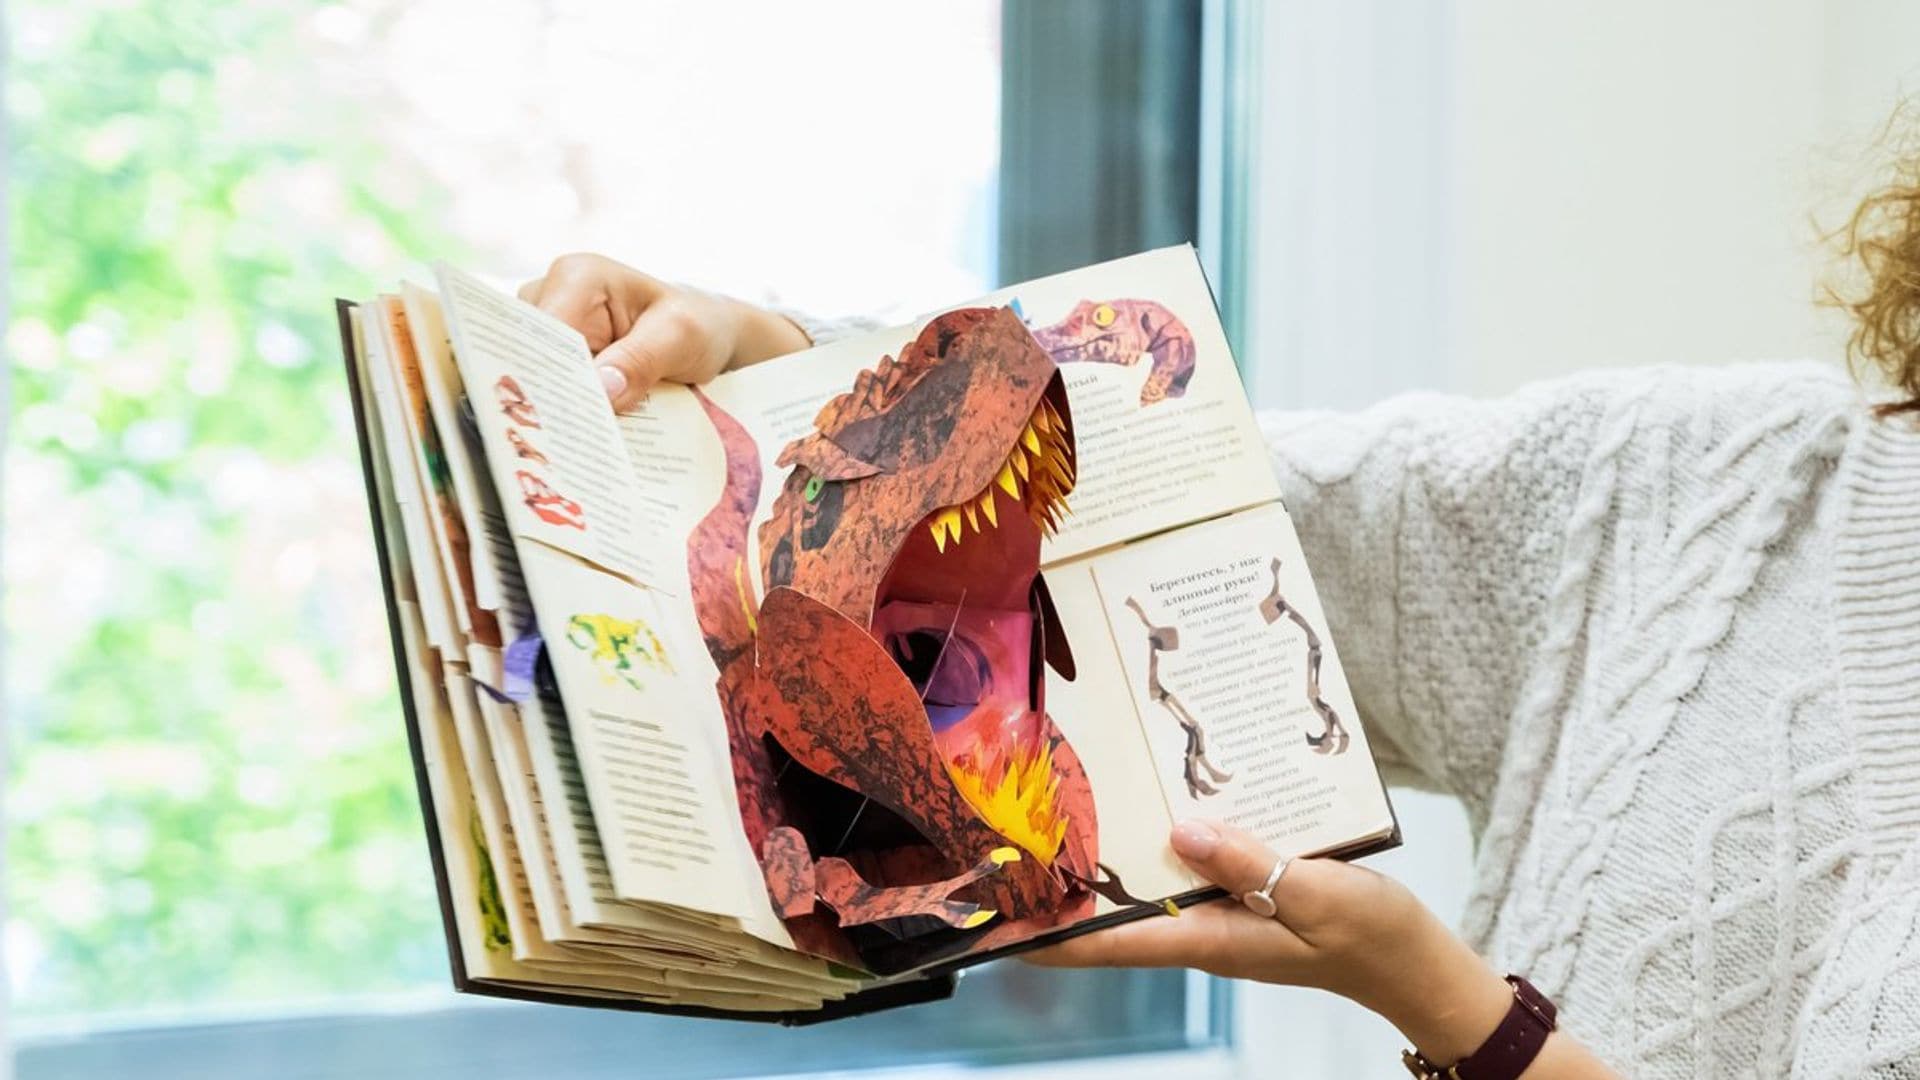 ¿A tu hijo le gustan los dinosaurios? Con estos libros lo aprenderán todo sobre ellos